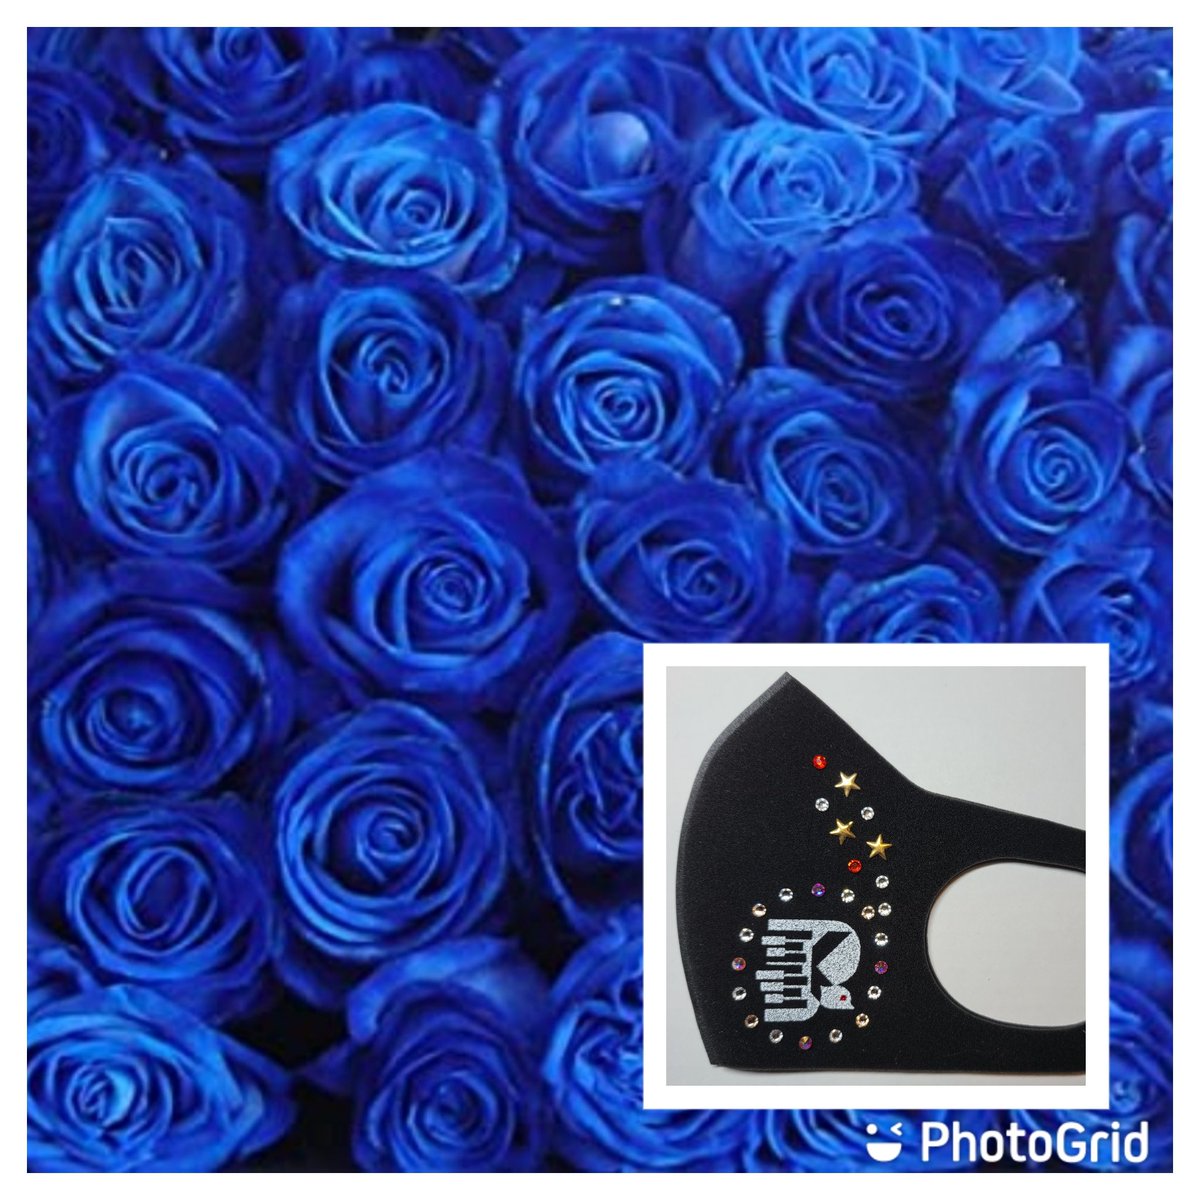 ট ইট র 松田泰子 チームけいちゃんからお花のお届けです ブルーローズ 奇跡の花 青いバラの花言葉 神の祝福 夢を叶えるために努力をした人に喝采を贈る という想いを込めて けいちゃん全国ツアー始動おめでとう